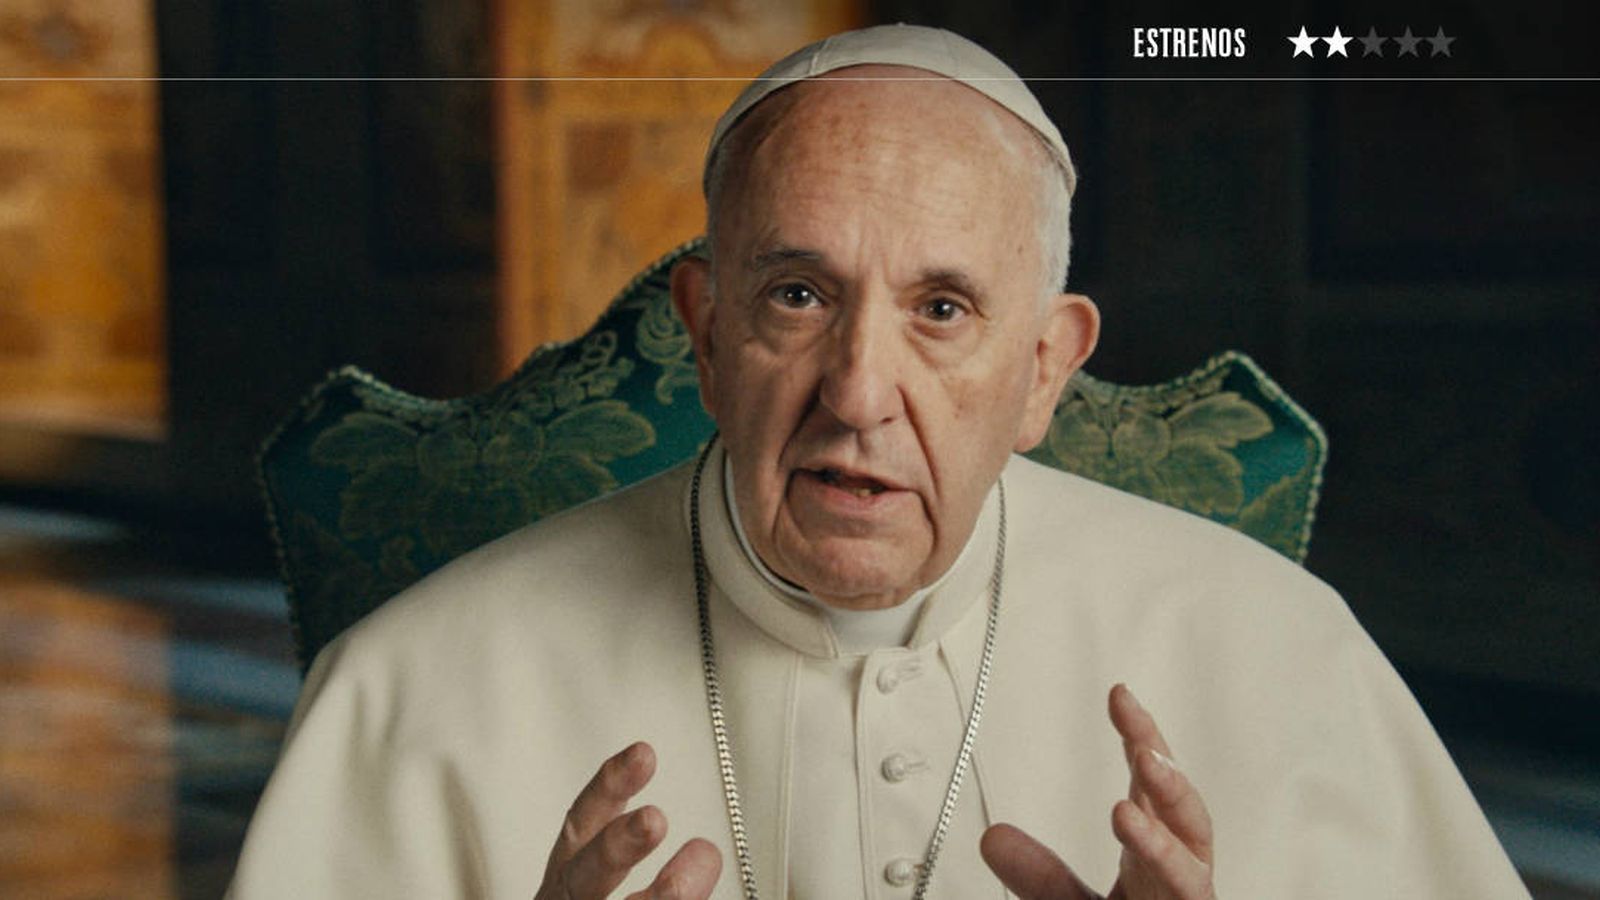 Foto: El papa Francisco es el protagonista del último documental de Wim Wenders. (Universal)